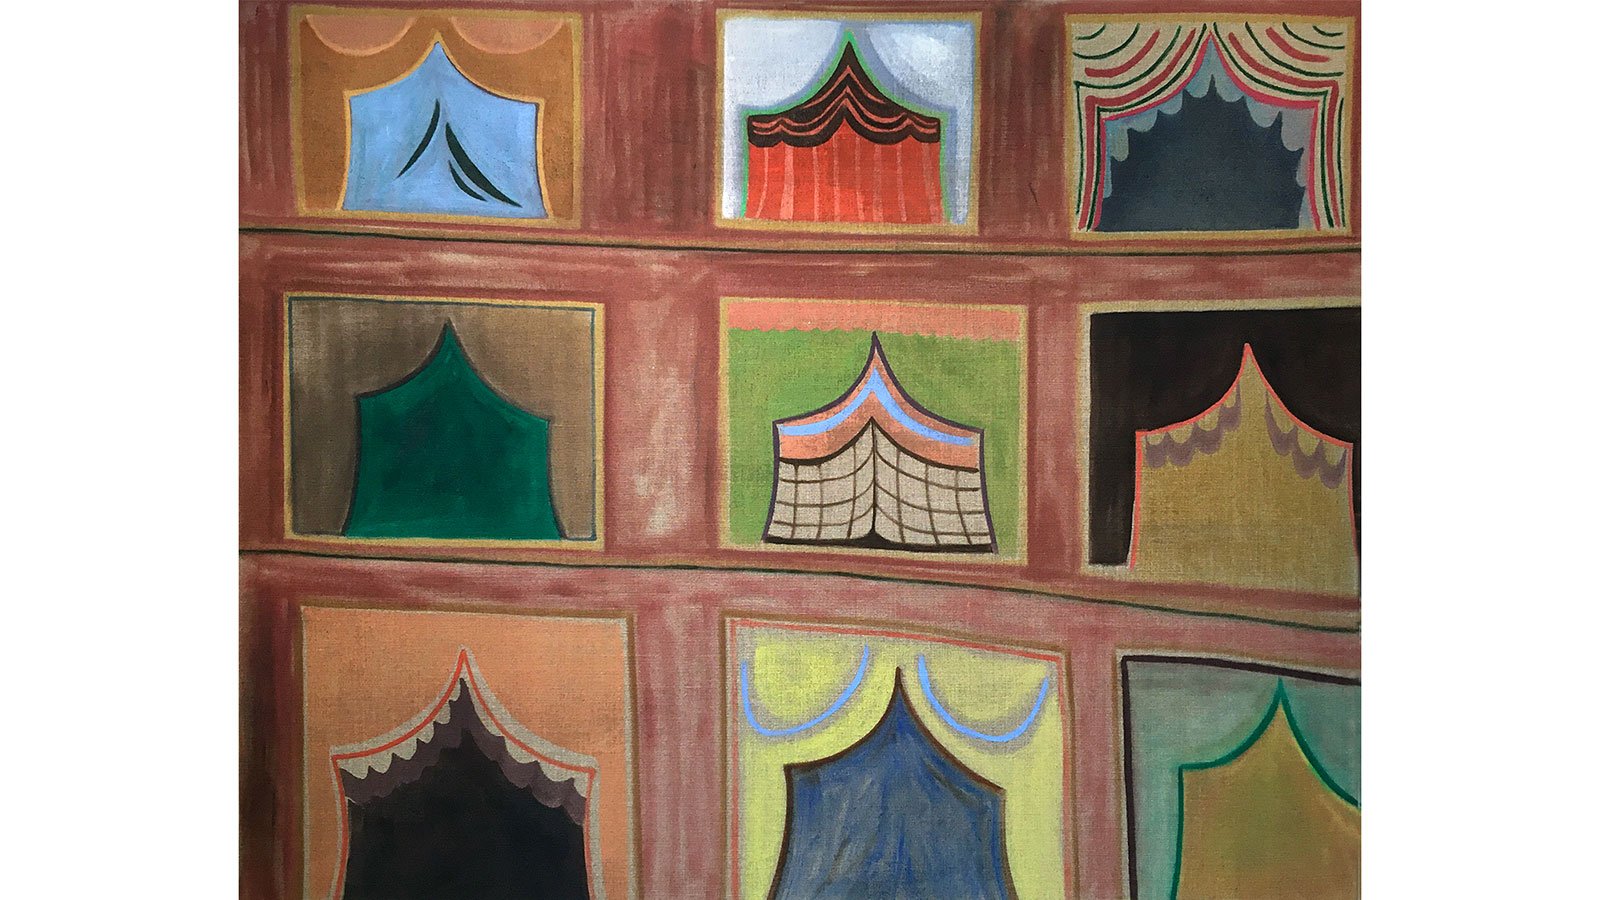 En oljemålning med flera scener eller tält i olika färger, form och utseende i varsin ruta. De liknar ridåer på medeltida tält, cirkustält eller teaterpaviljong. 